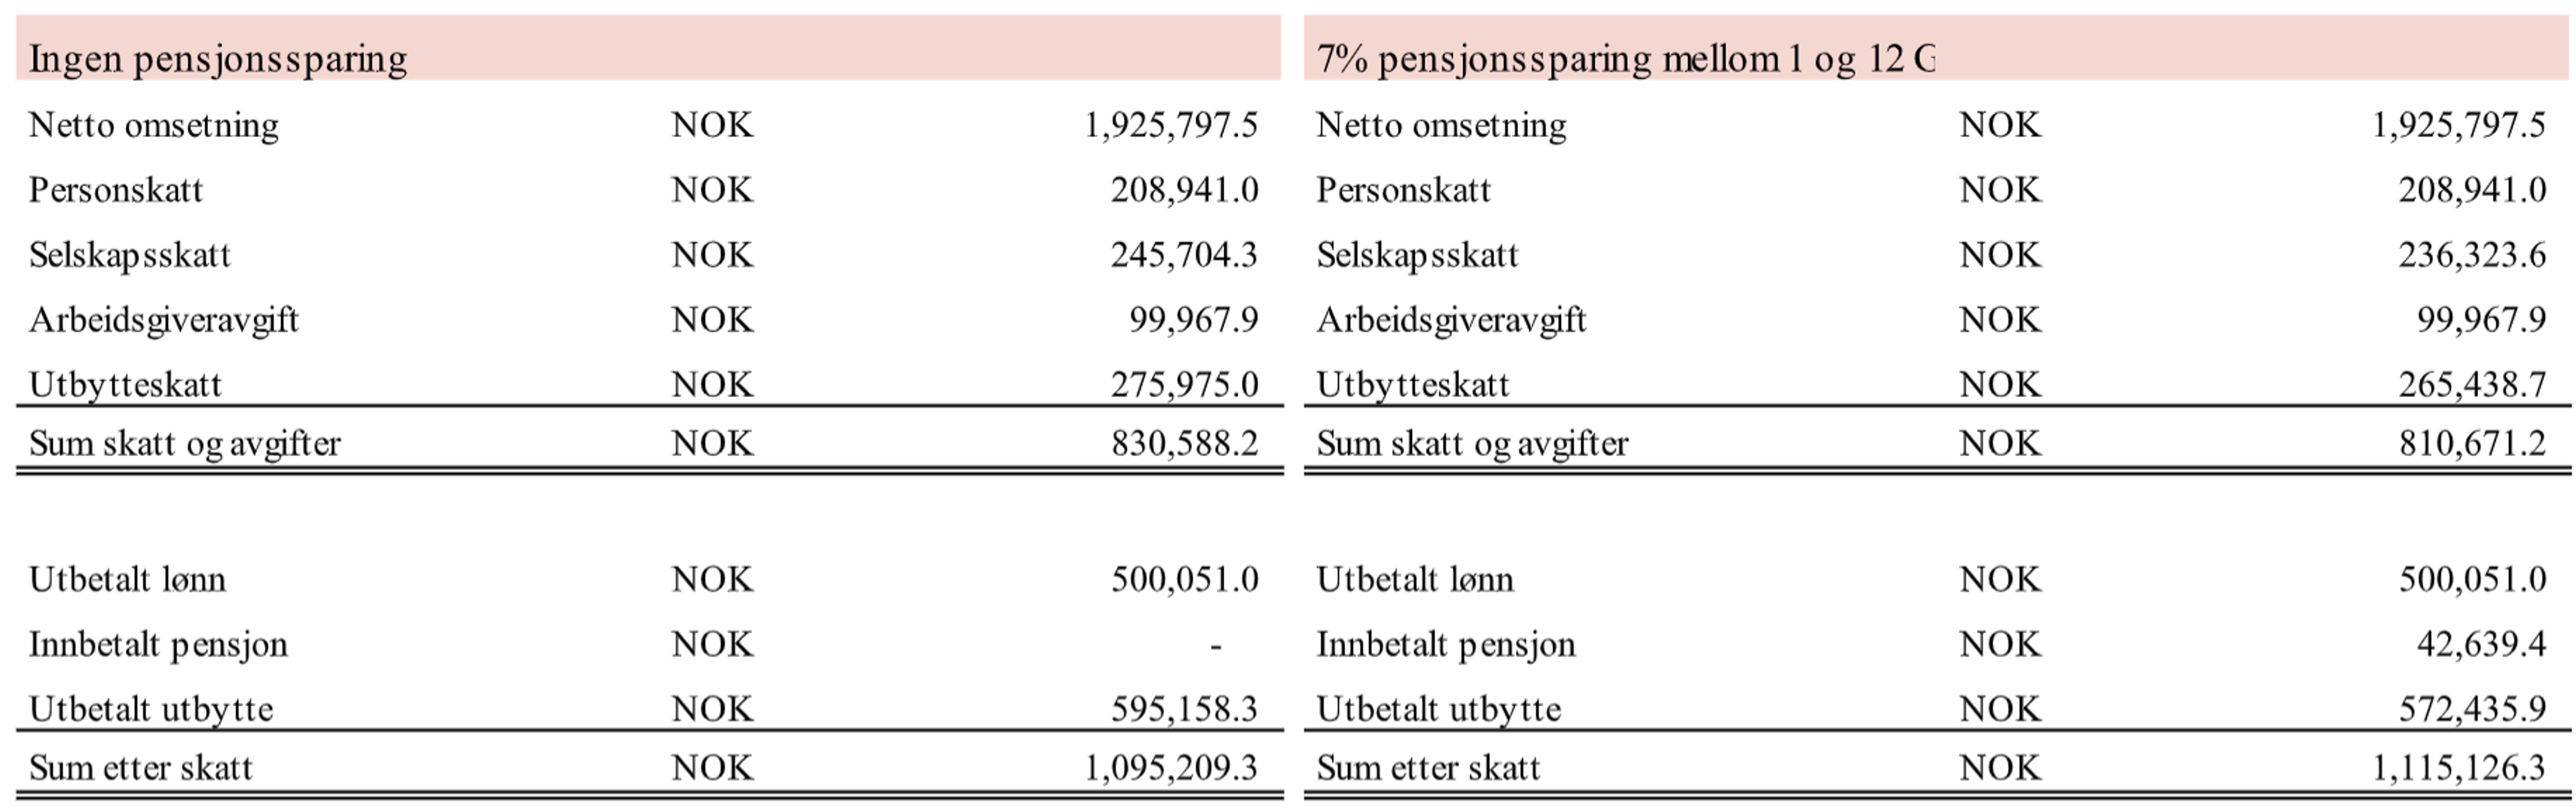 Tabell-fremstilling av fordelingen med og uten pensjonssparing